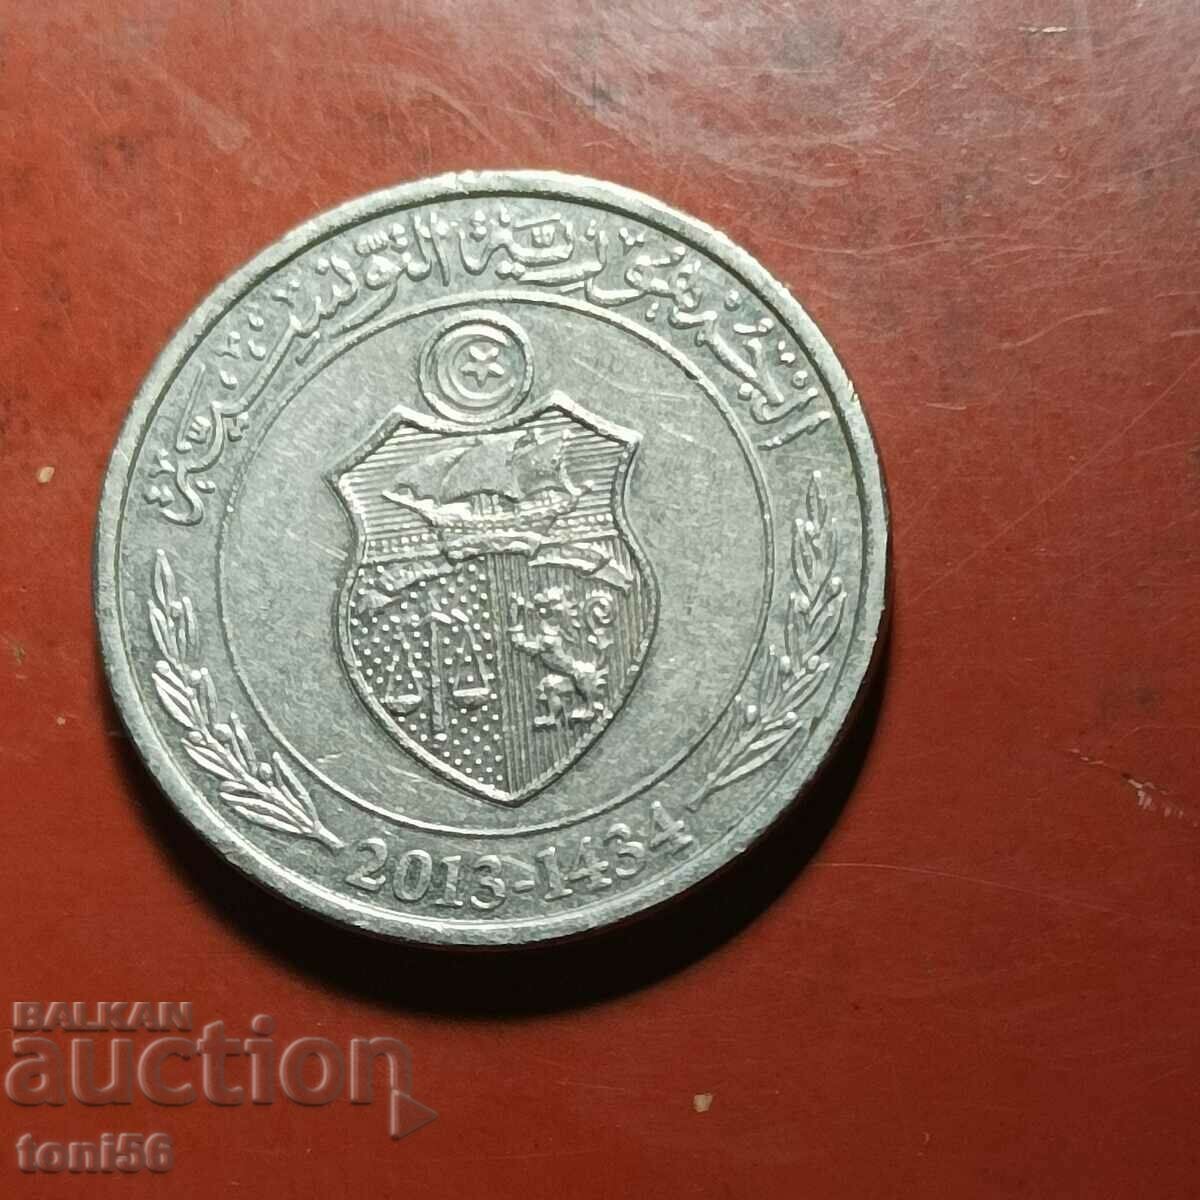 Tunisia 1/2 dinar 2013